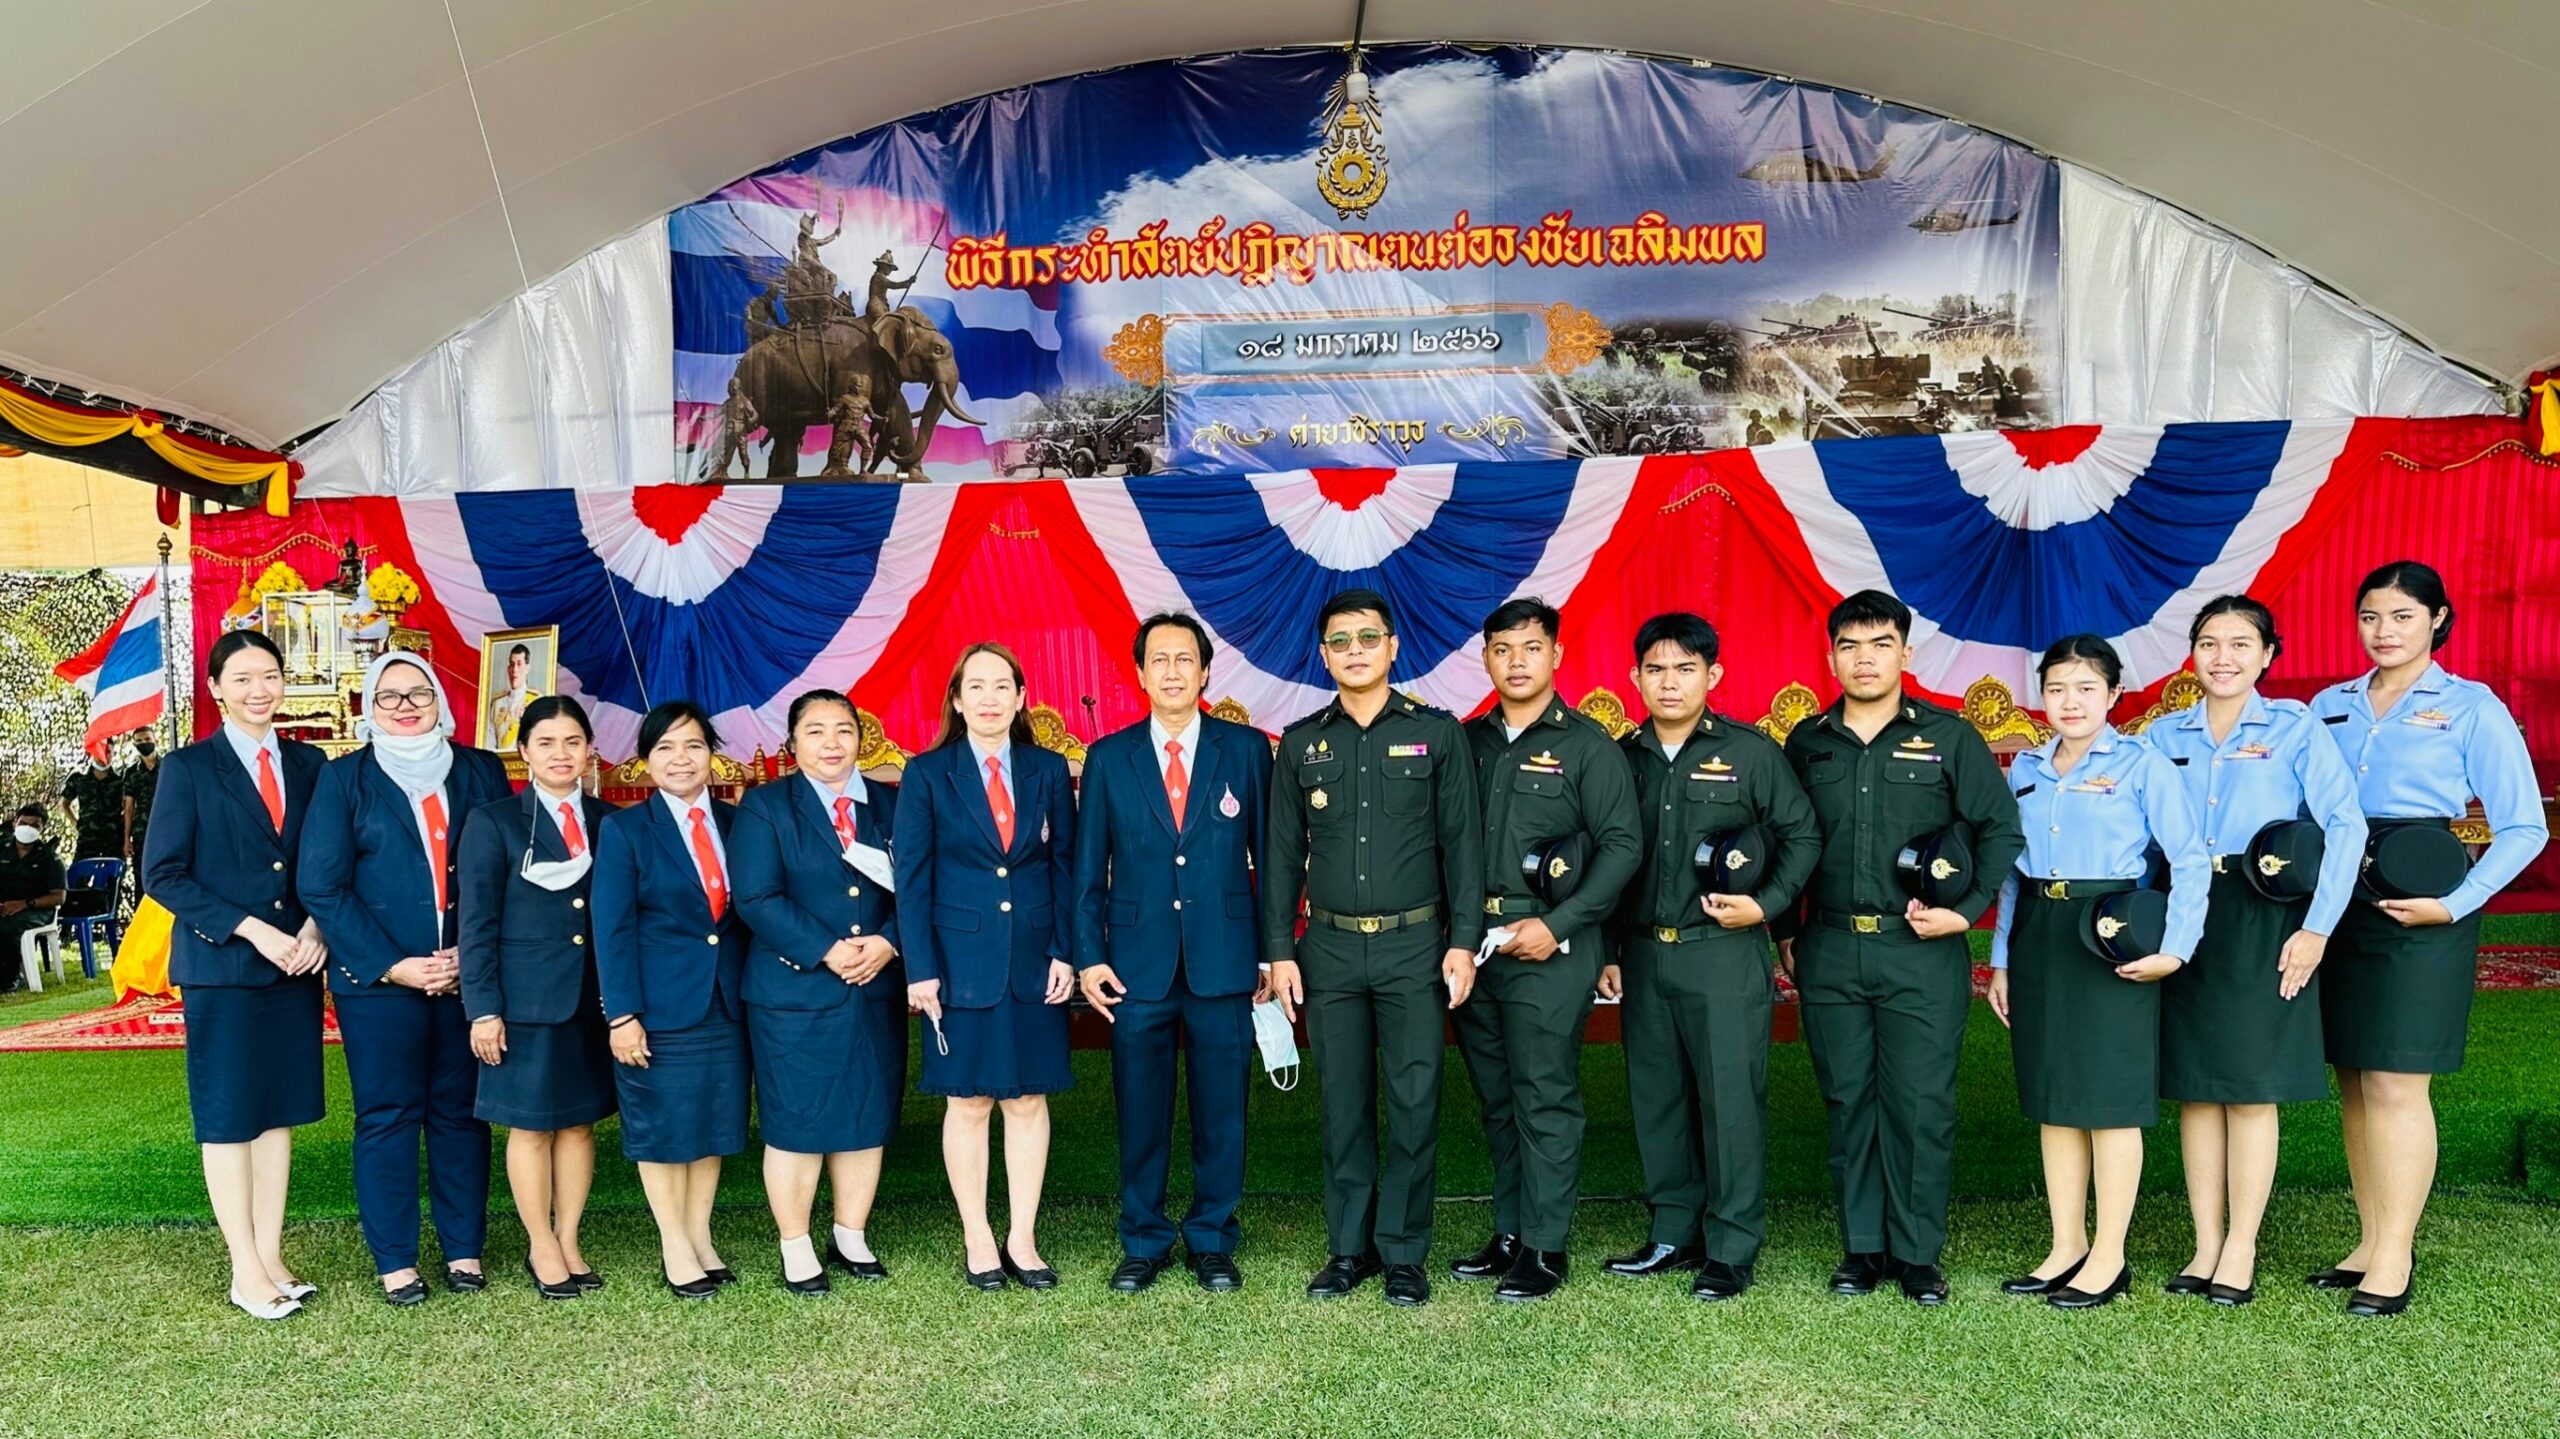 บุคลากรมหาวิทยาลัยวลัยลักษณ์และนักศึกษาวิชาทหาร ร่วมกิจกรรมวันกองทัพไทย ณ ค่ายวชิราวุธ กองทัพภาคที่ 4